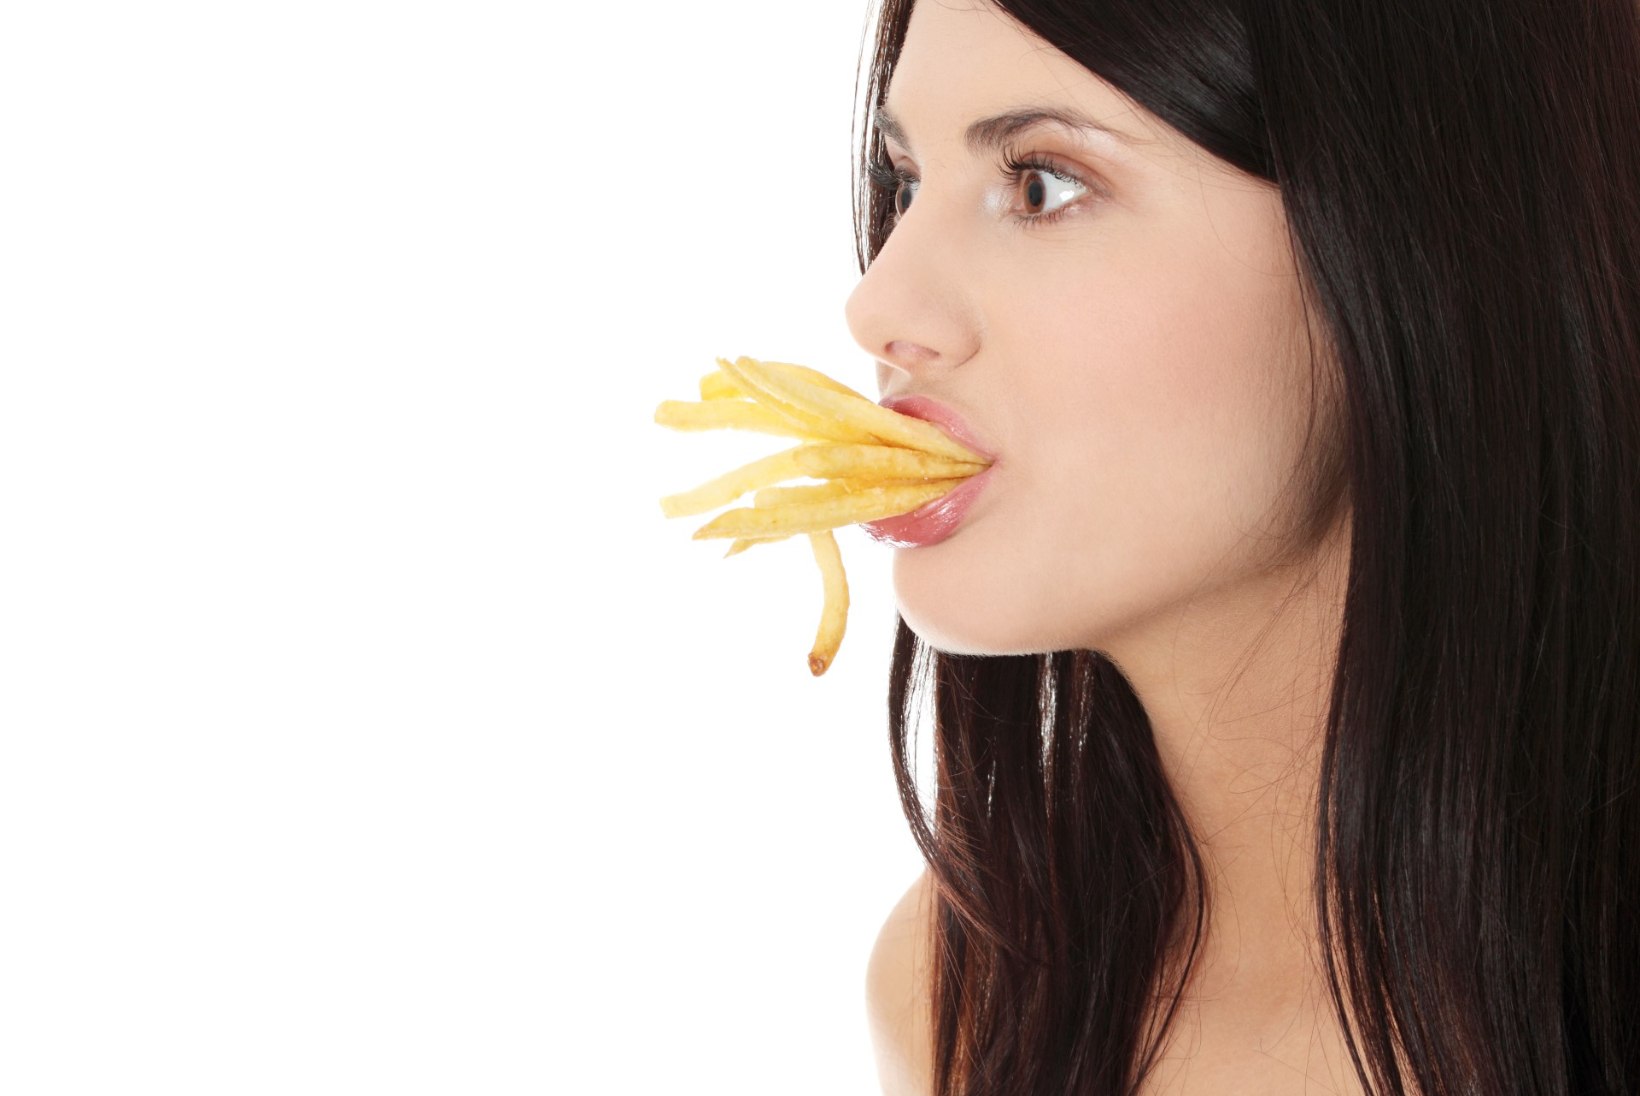 Tohoh! Pidev friikartulite söömine võib kaasa tuua enneaegse surma